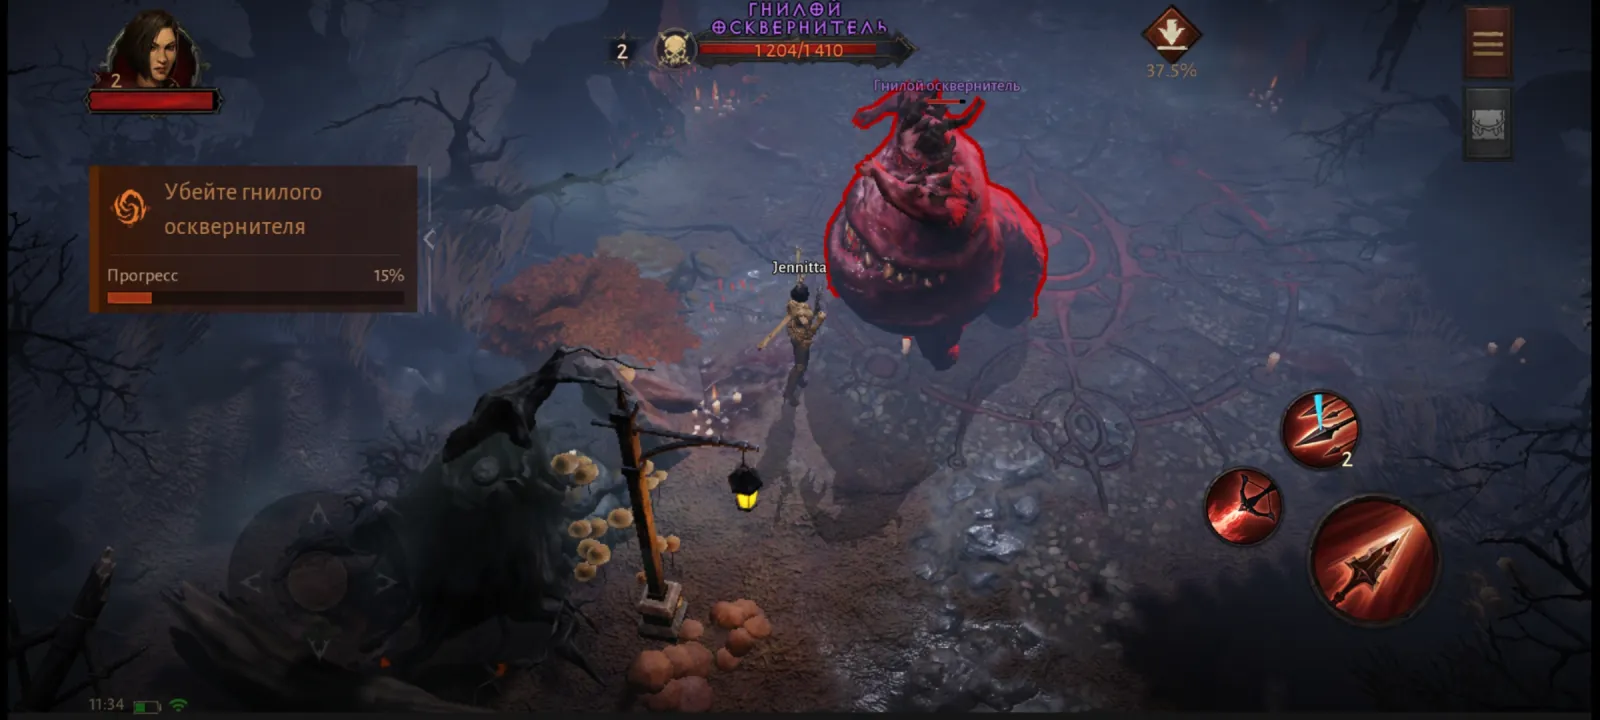 Уход Blizzard с китайского рынка не затрагивает Diablo Immortal, в которую продолжат играть китайские геймеры.